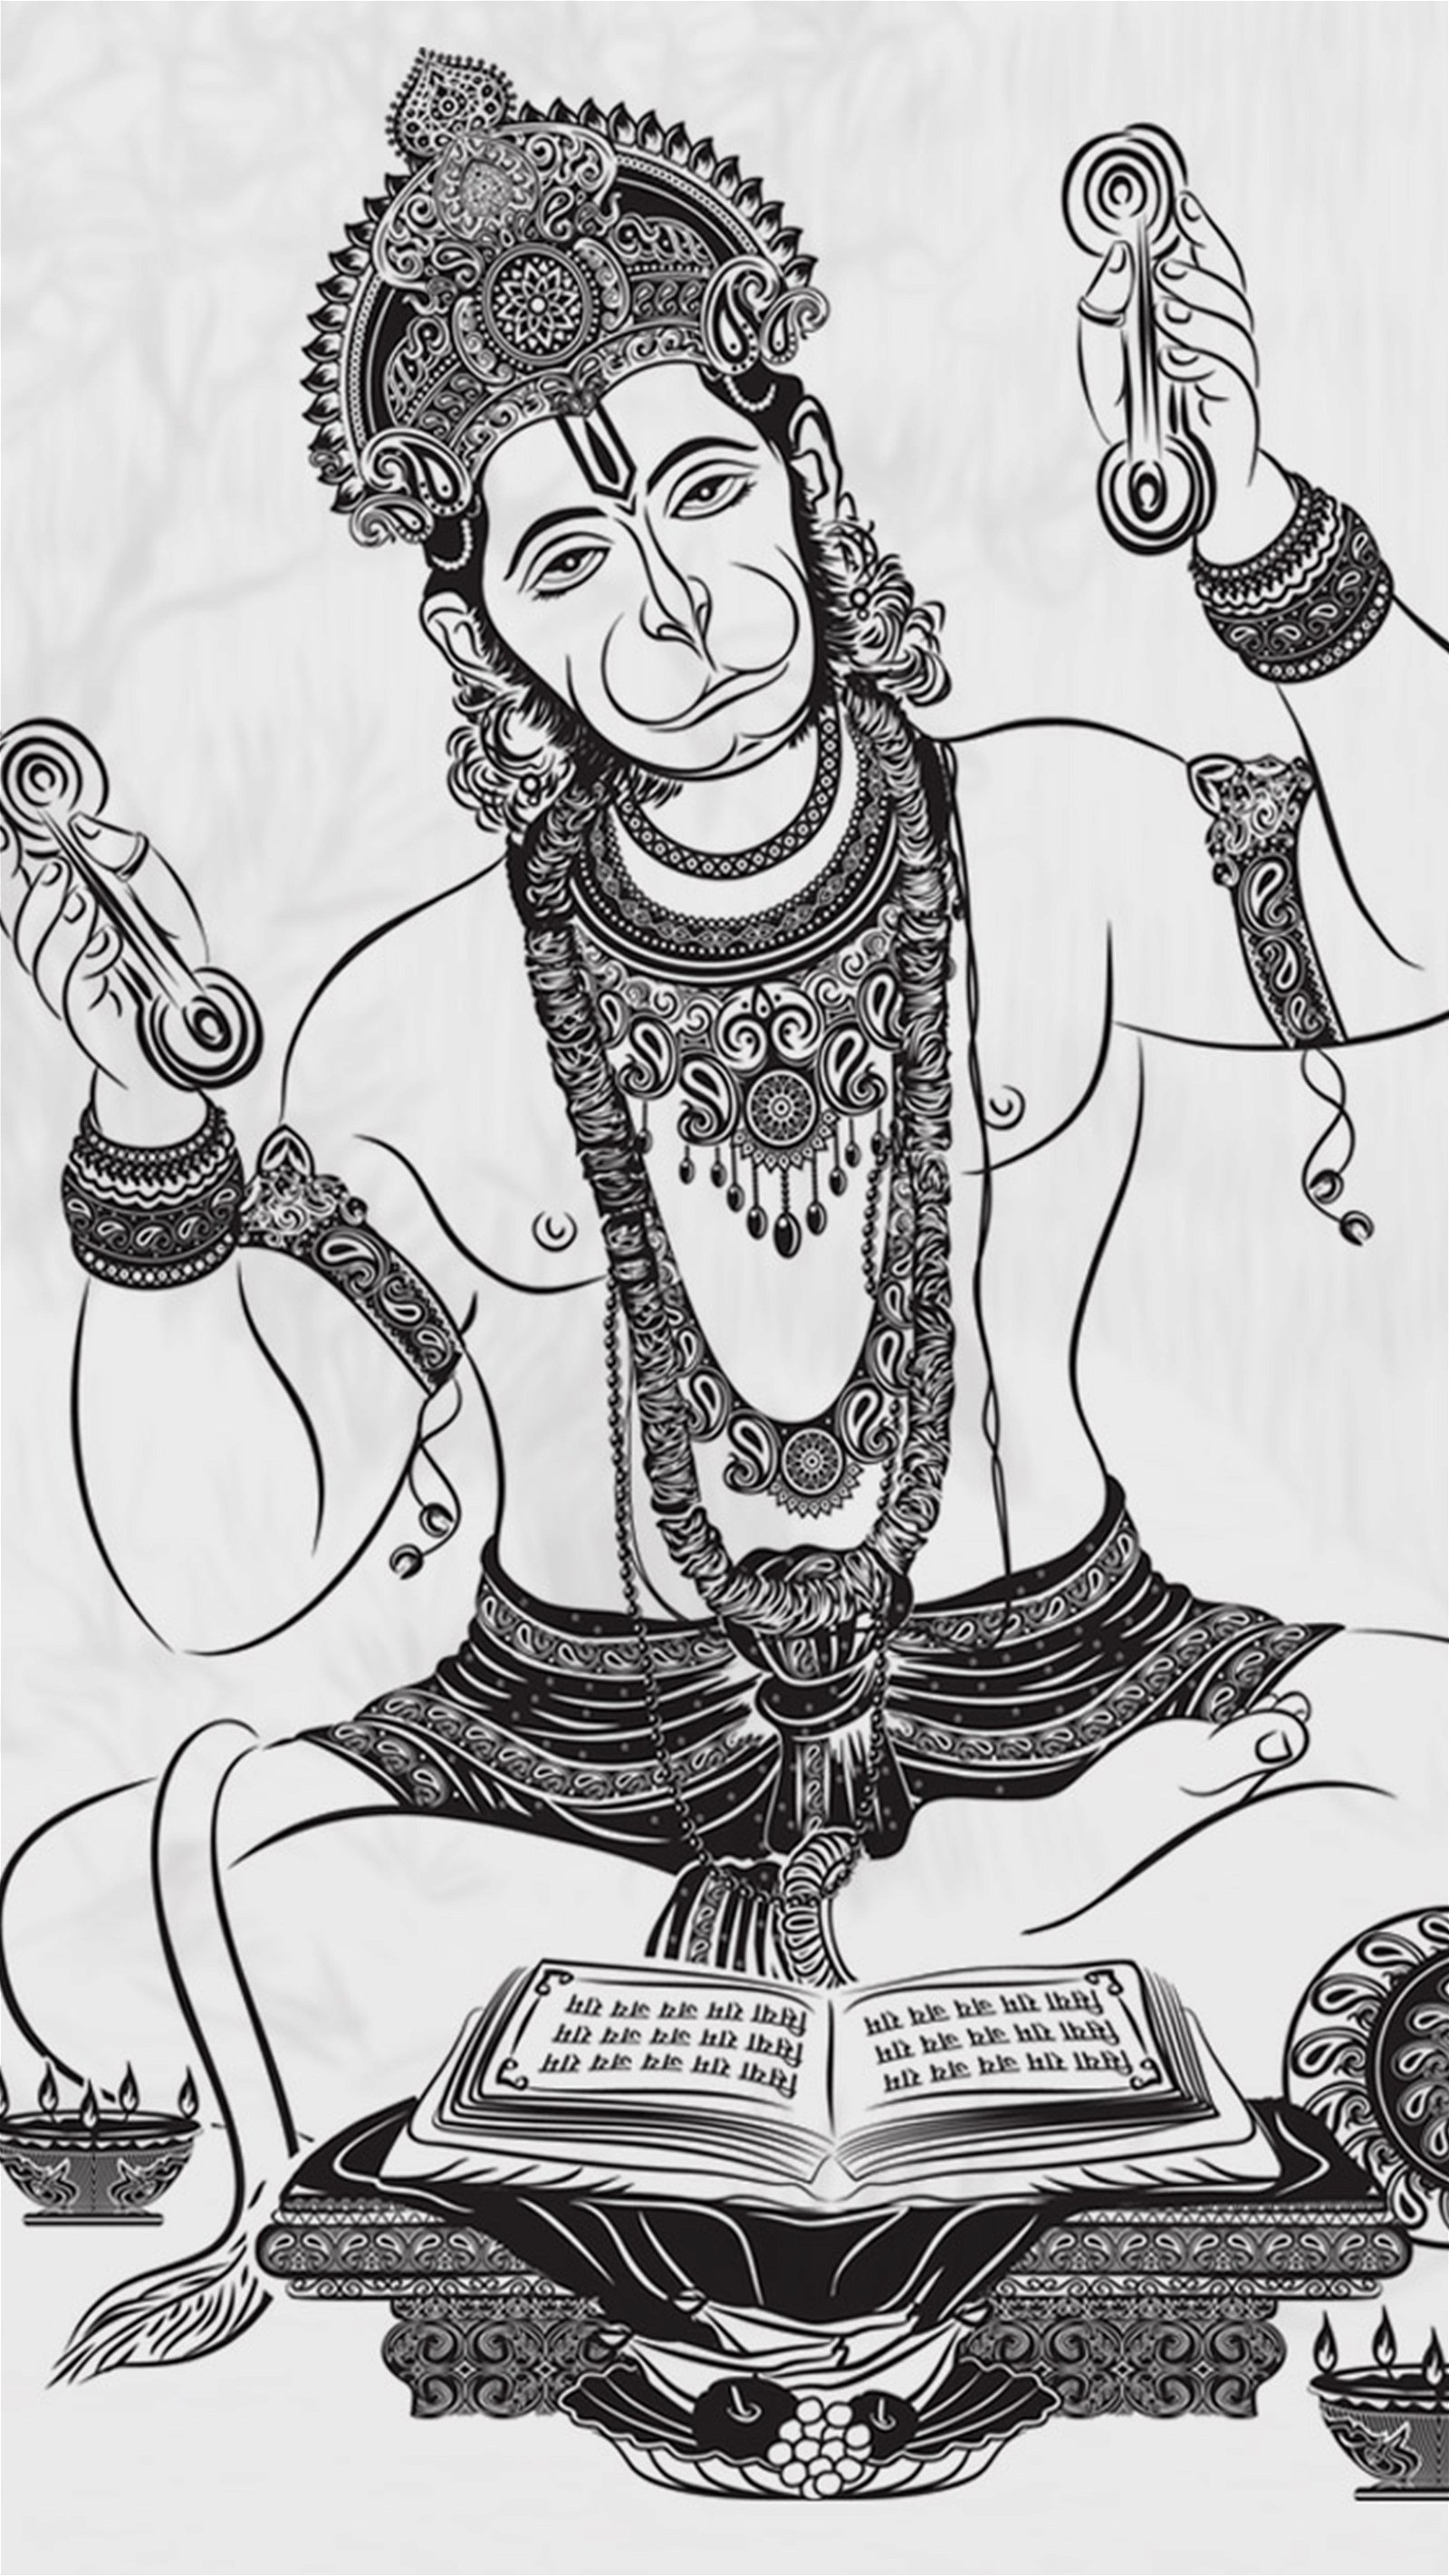 How to draw Hanuman ji sketch | Lord hanuman ji drawing 🙏❤ - YouTube-sonxechinhhang.vn